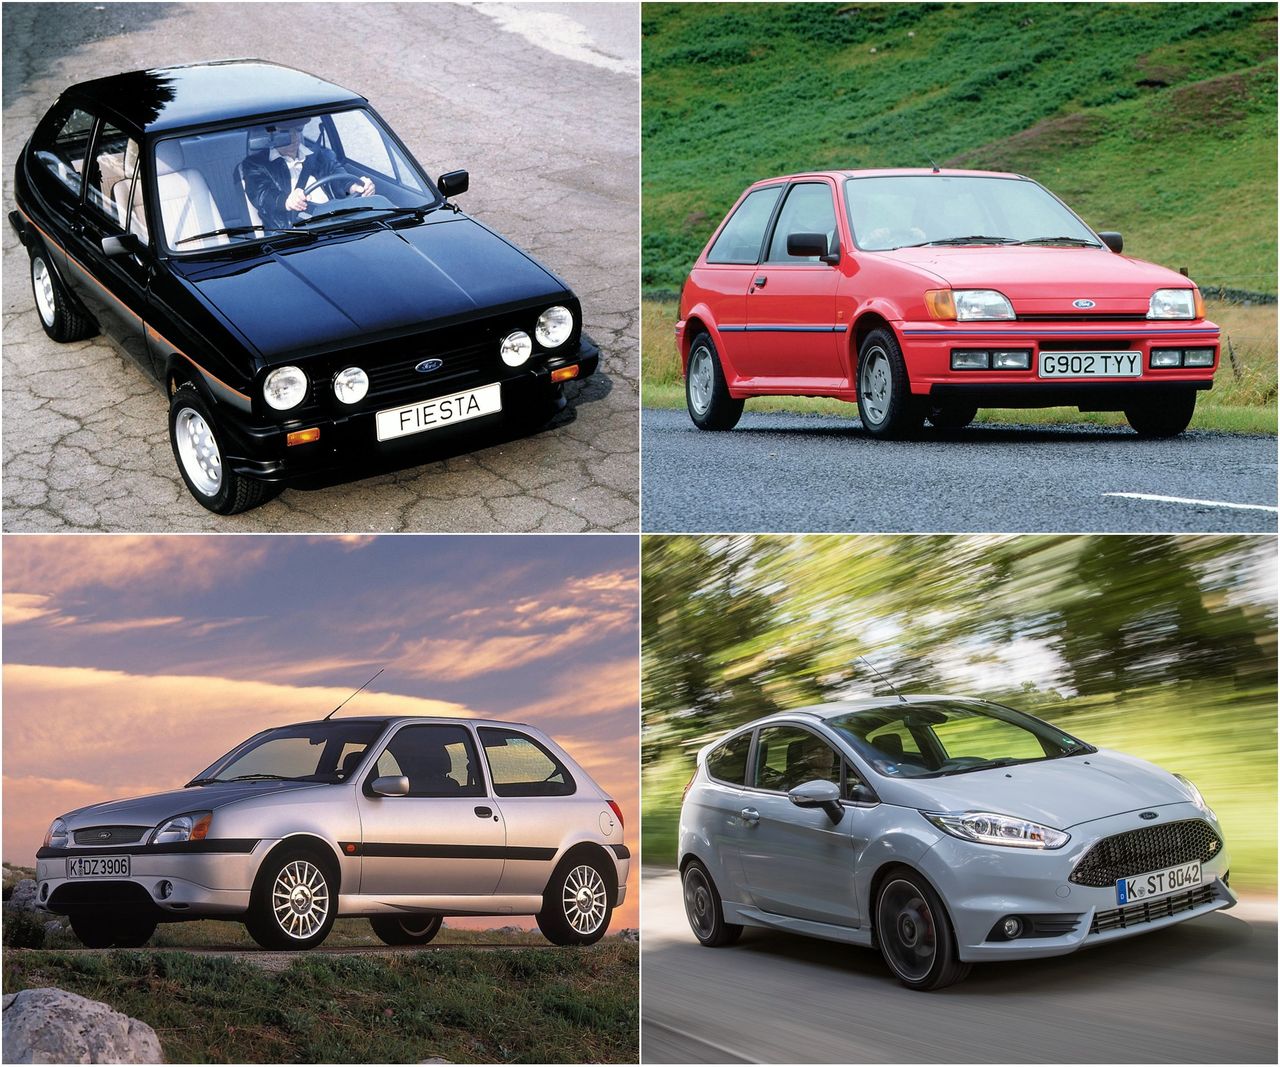 Ford Fiesta zawsze był wzorowym hot hatchem, ale ostatnia generacja zaczyna za bardzo wychodzić poza wzorzec